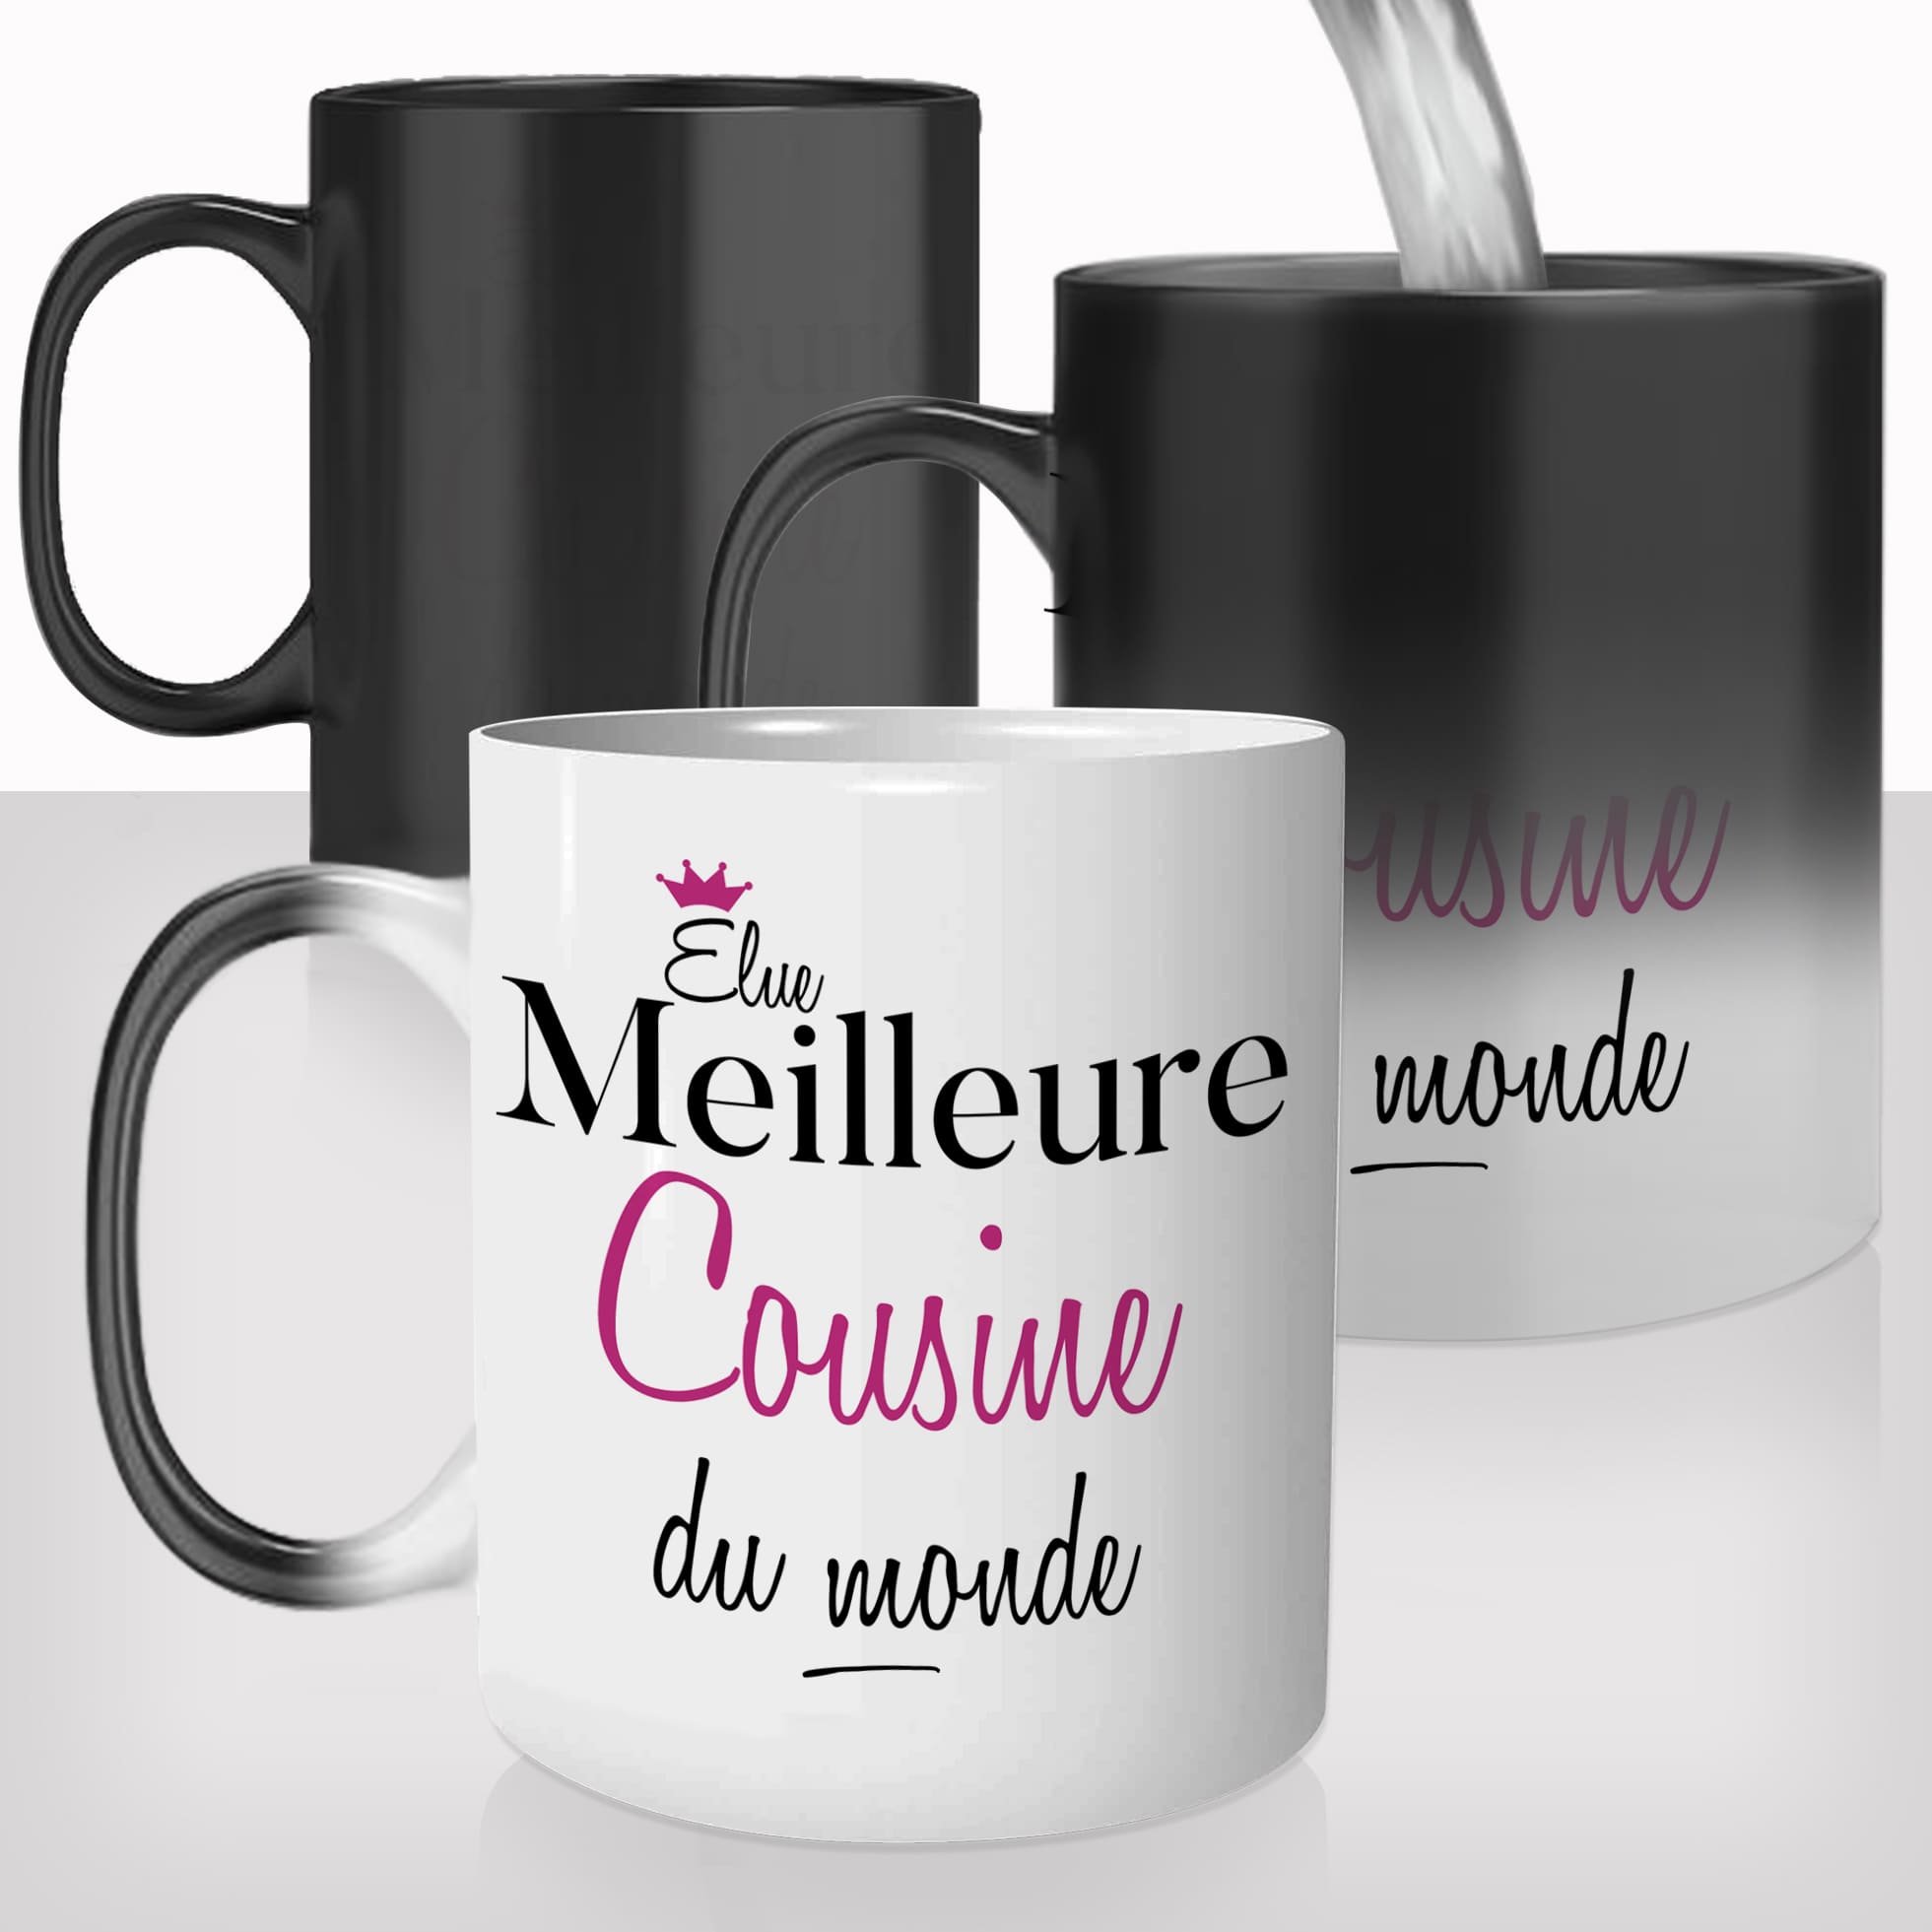 mug-magique-personnalisable-thermoreactif-thermique-elue-meilleure-cousine-femme-cousinade-prénom-personnalisé-idée-cadeau-original2